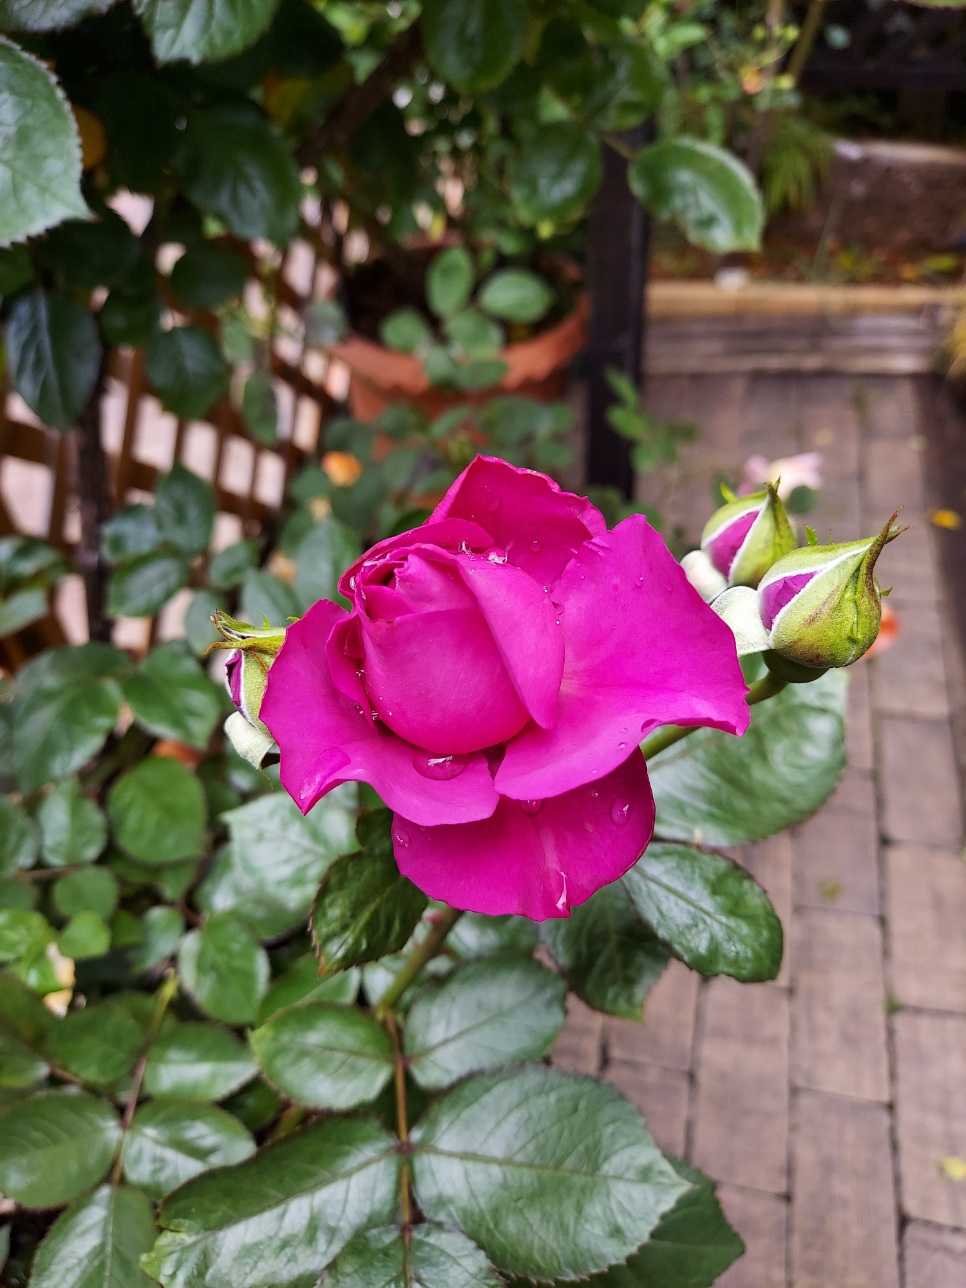 ︎咲き始めた薔薇たち(๑╹ω╹๑ ) ︎ | 薔薇のお庭に憧れて‥ - 楽天ブログ